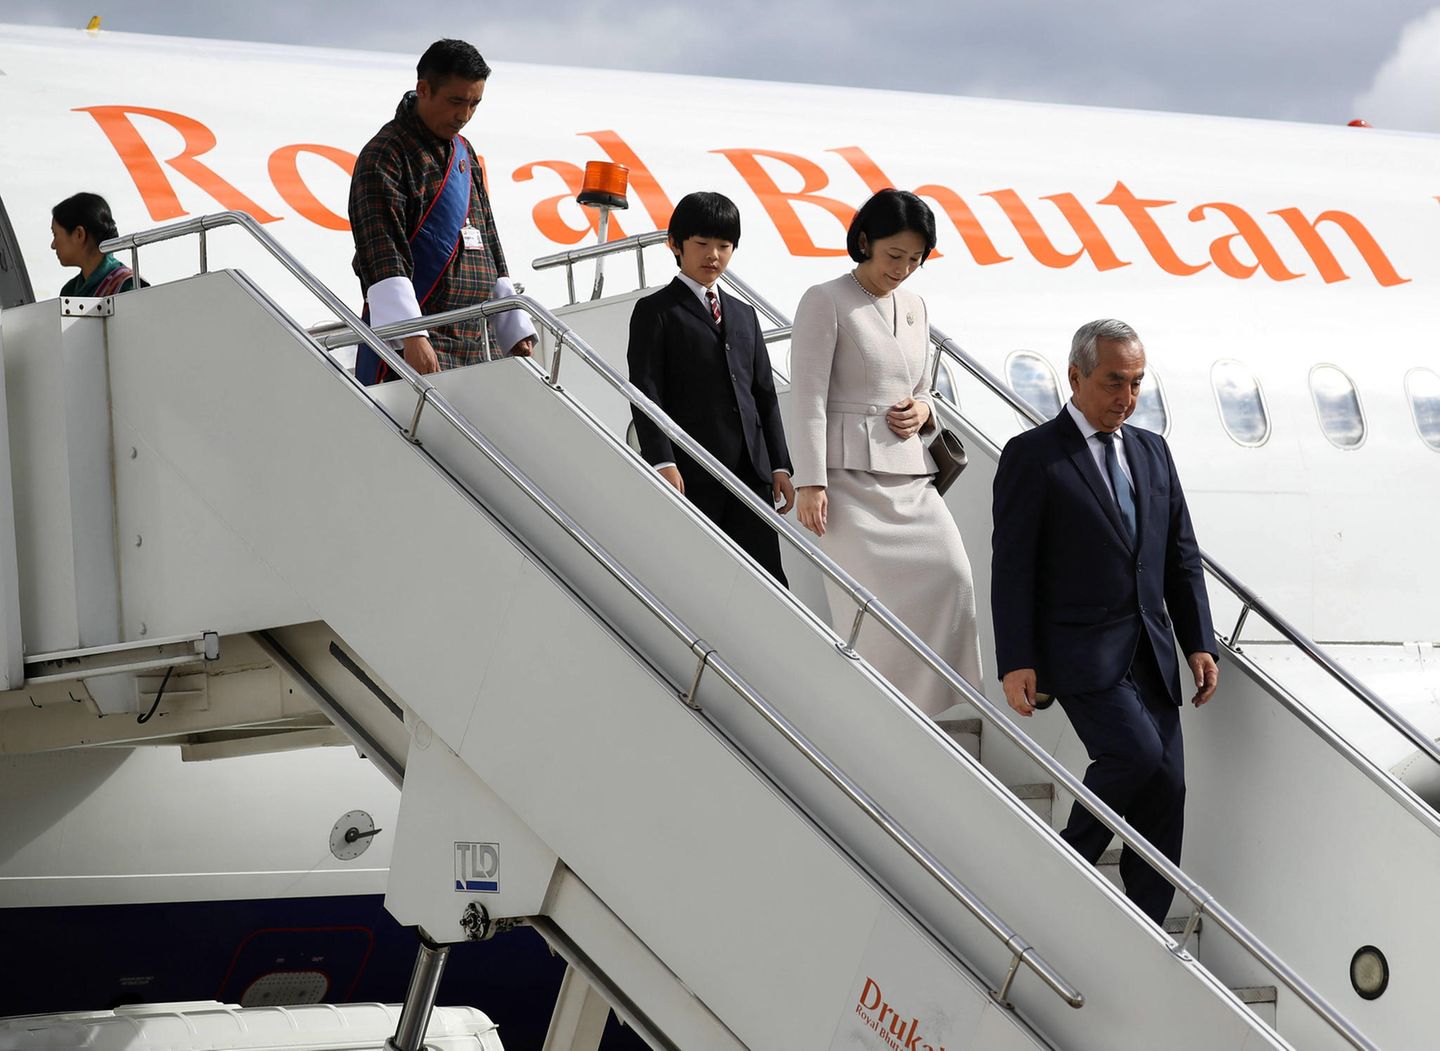 Am 17. August trifft die Kronprinzenfamilie zum Auftakt ihrer 10-tägigen Reise am Flughafen Paro in Bhutan ein. Prinz Hisahito verlässt zusammen mit seiner Mutter Kiko das Flugzeug. 